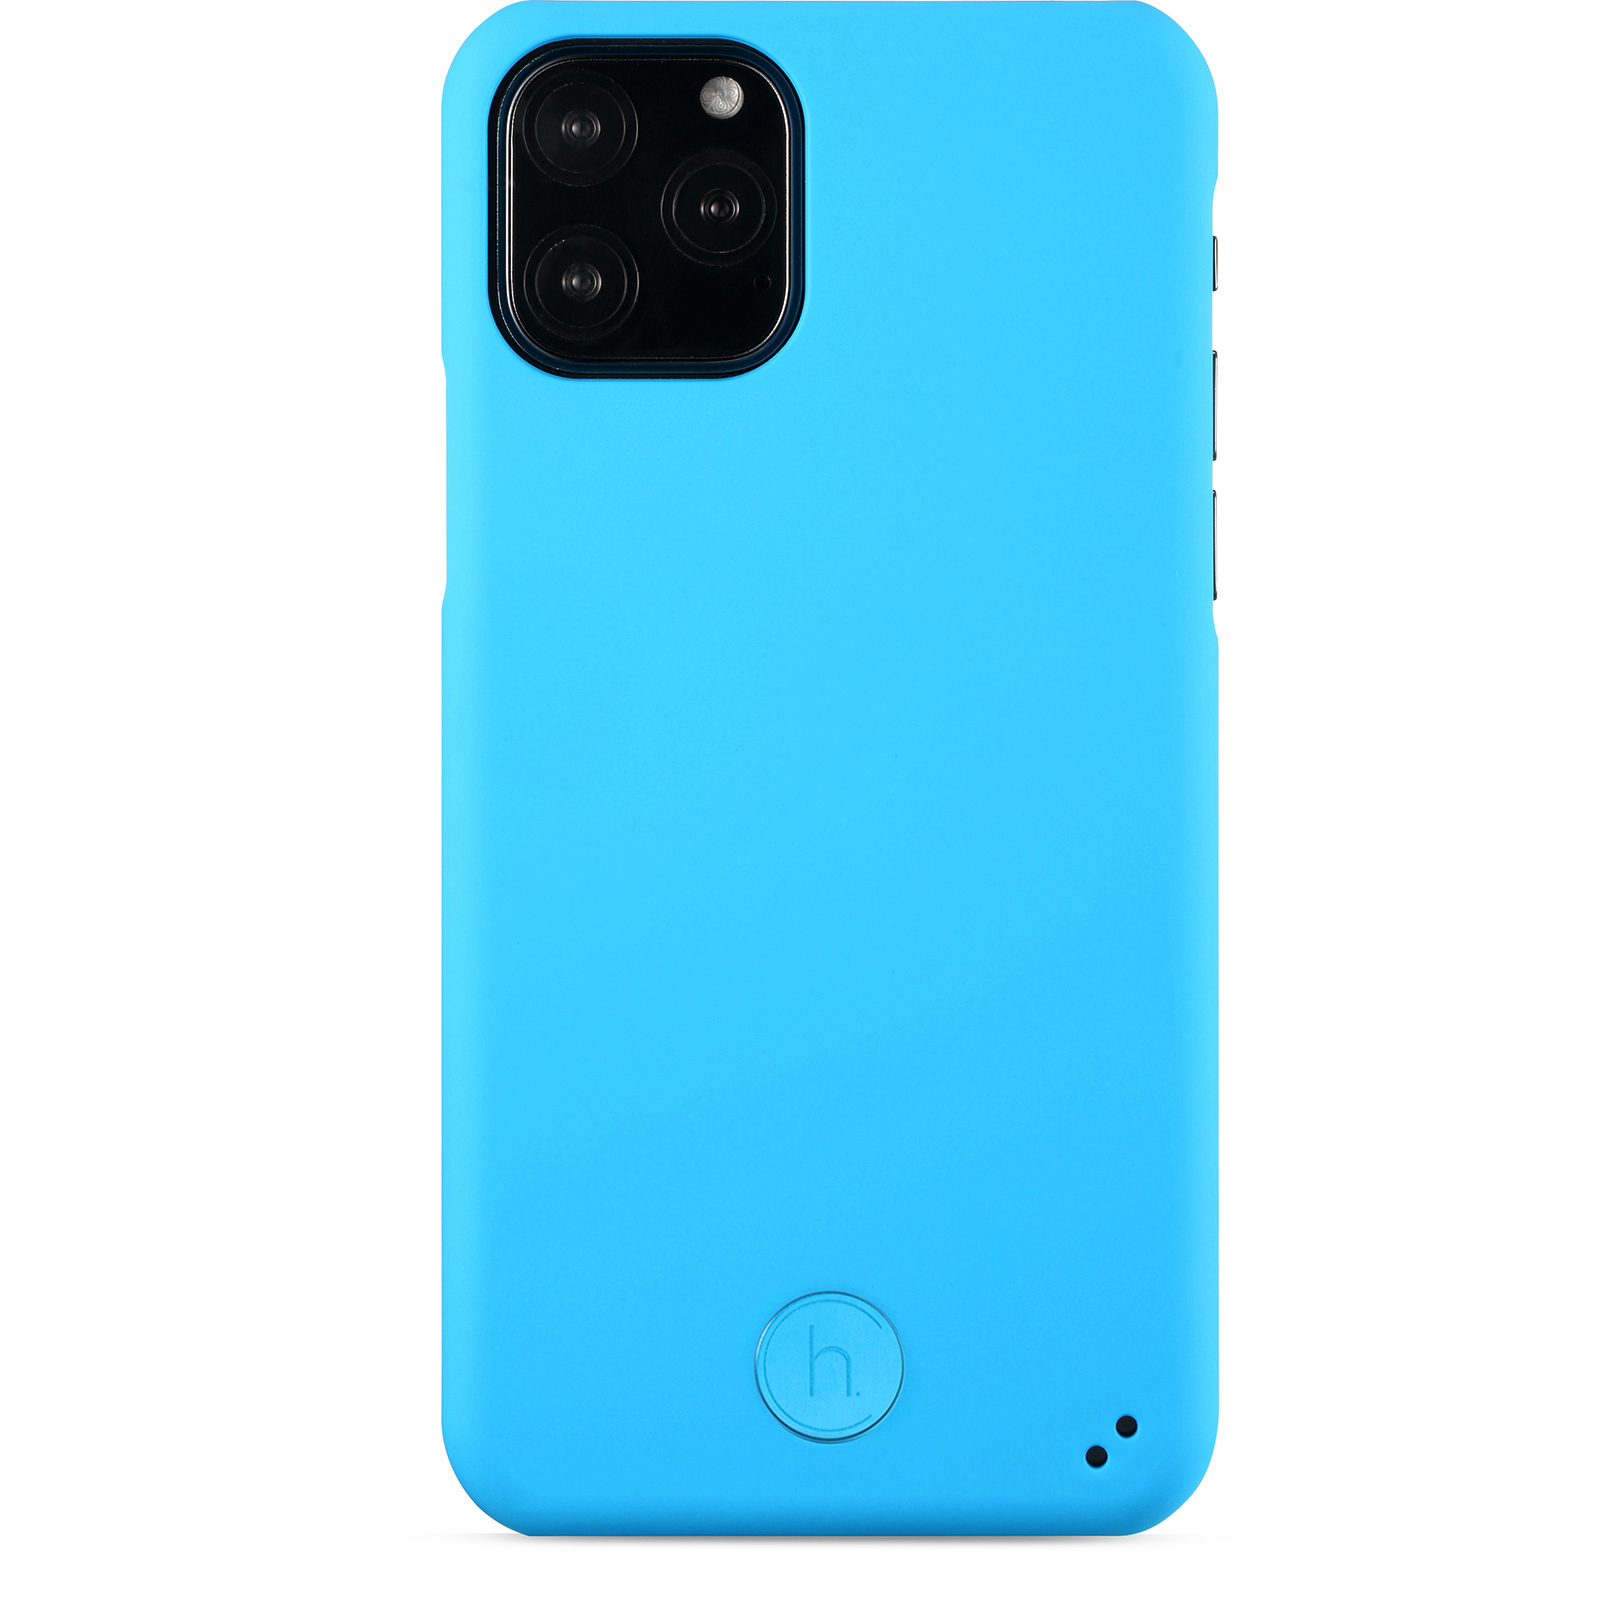 iPhone X/Xs/11 Pro, case connect, fluorescent blue